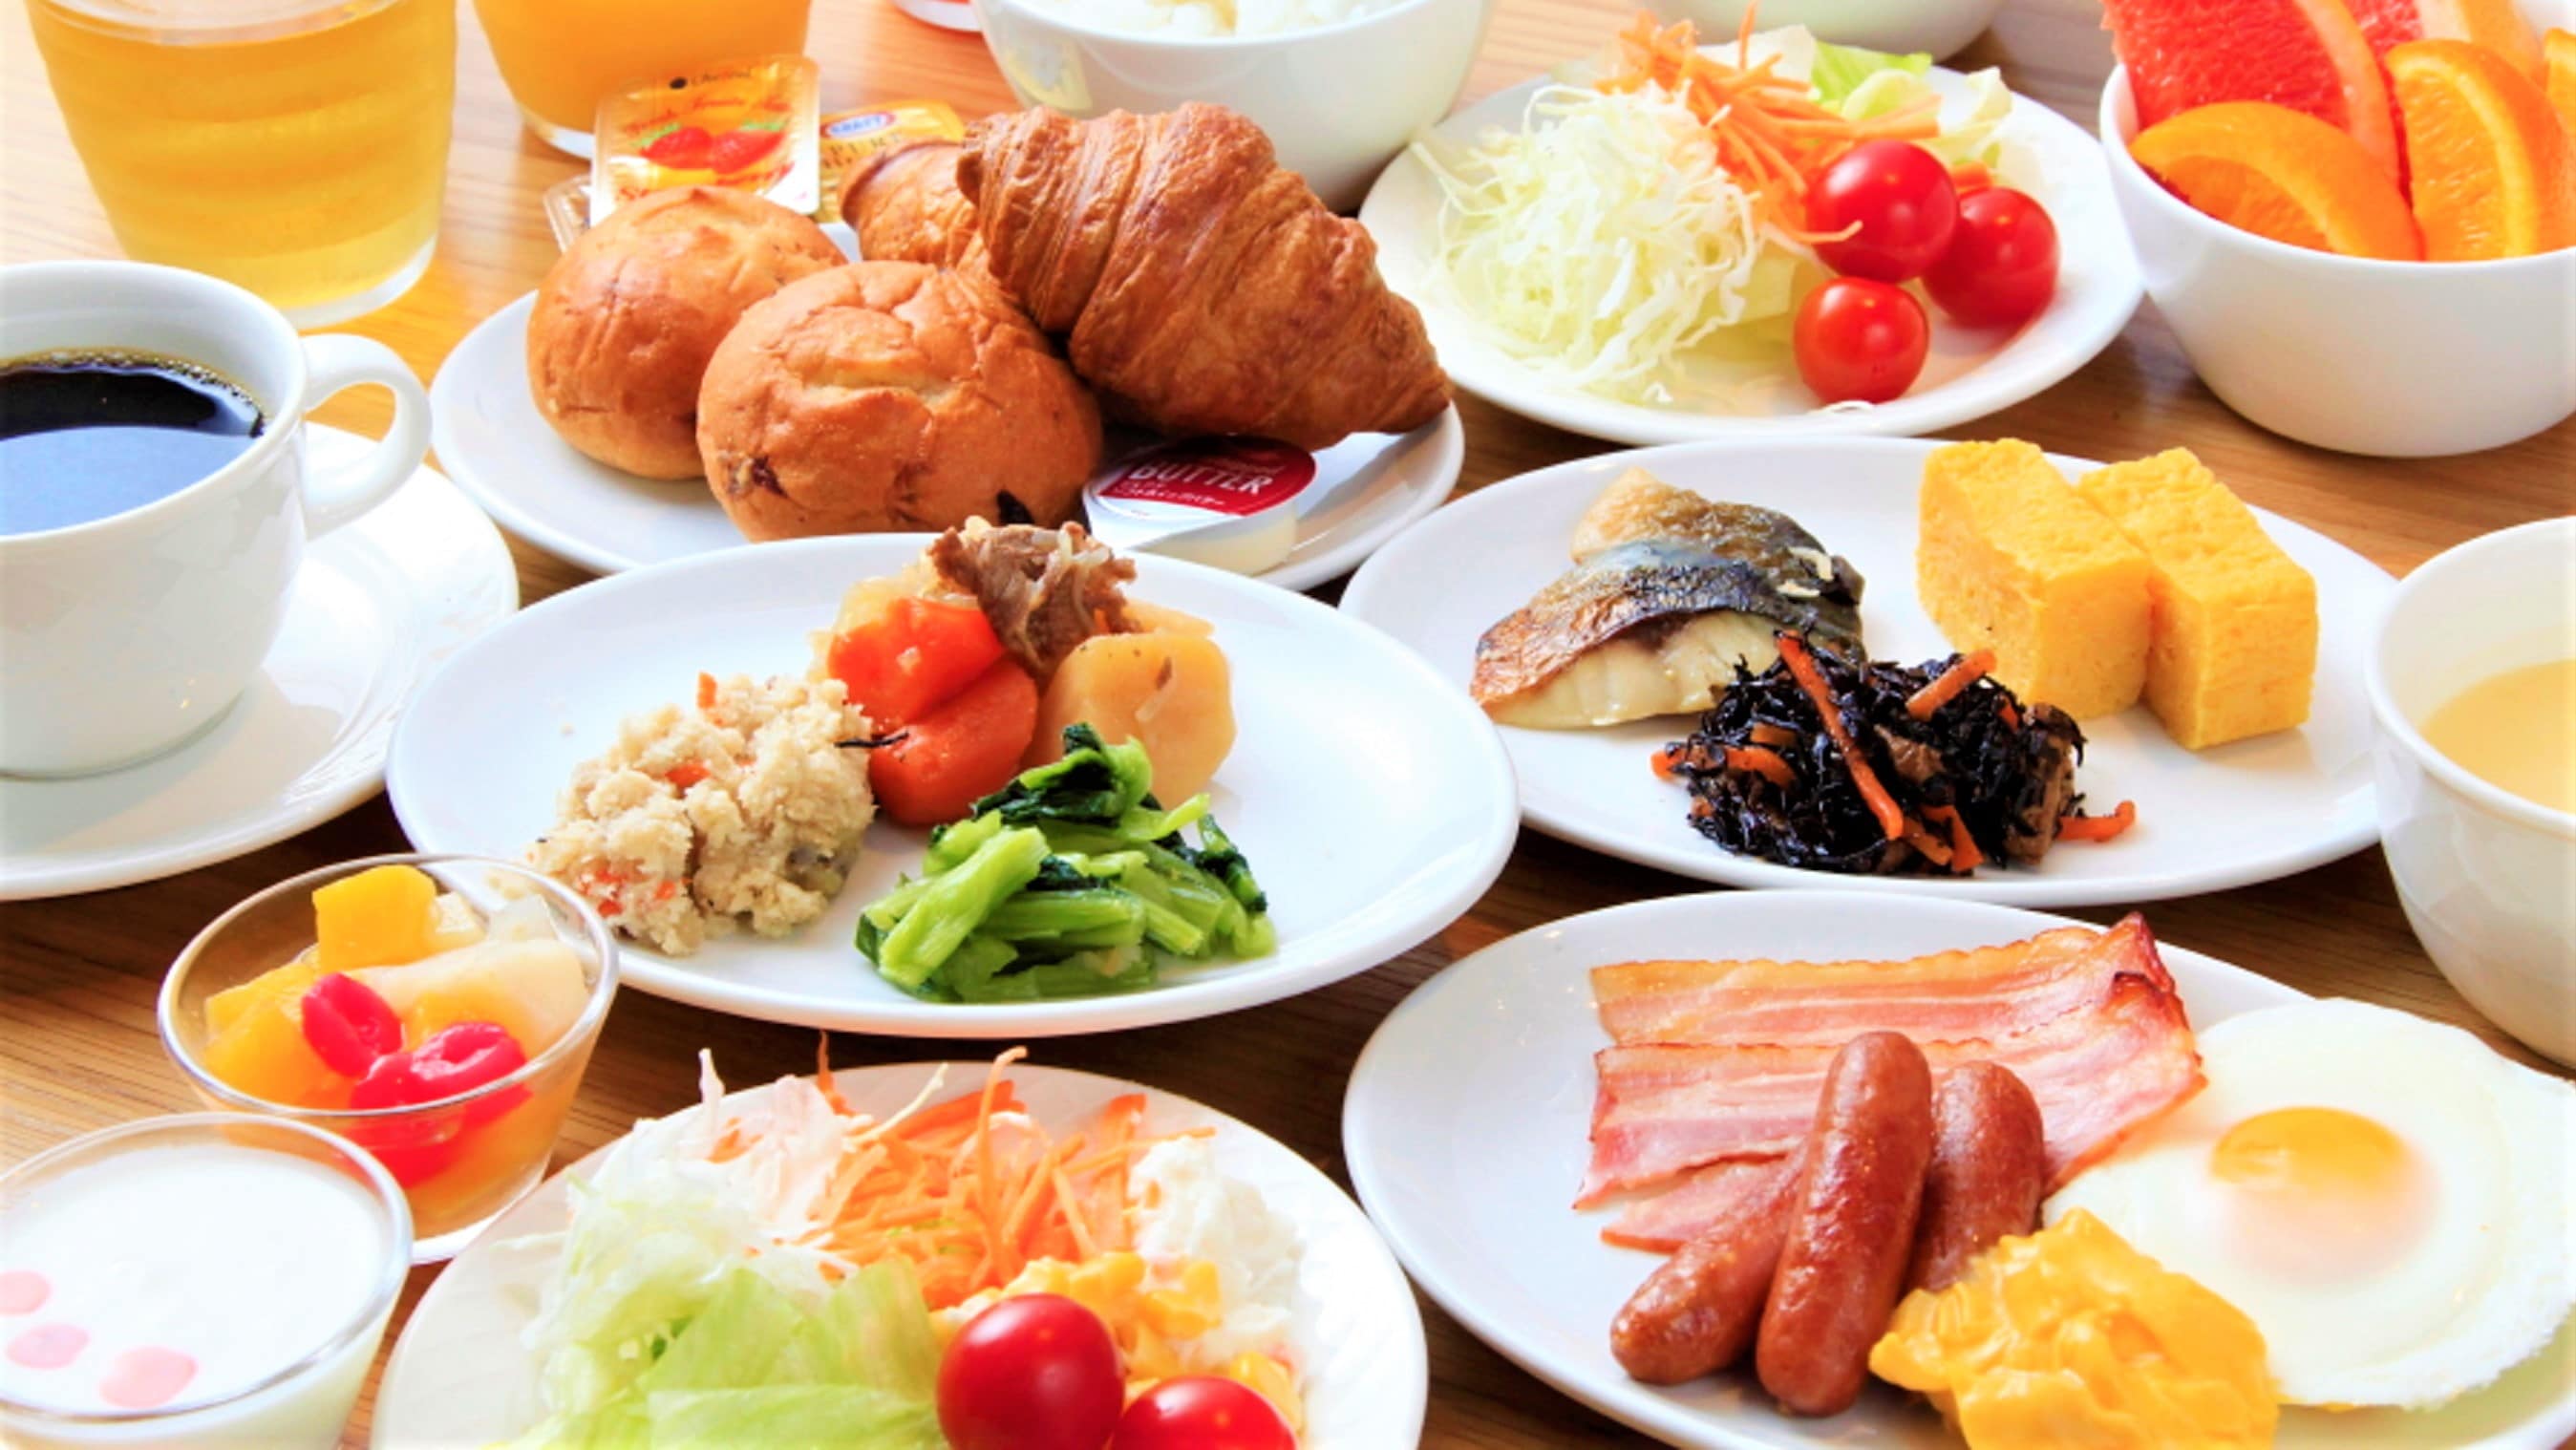 ภาพอาหารเช้าบุฟเฟ่ต์อาหารญี่ปุ่นและตะวันตก